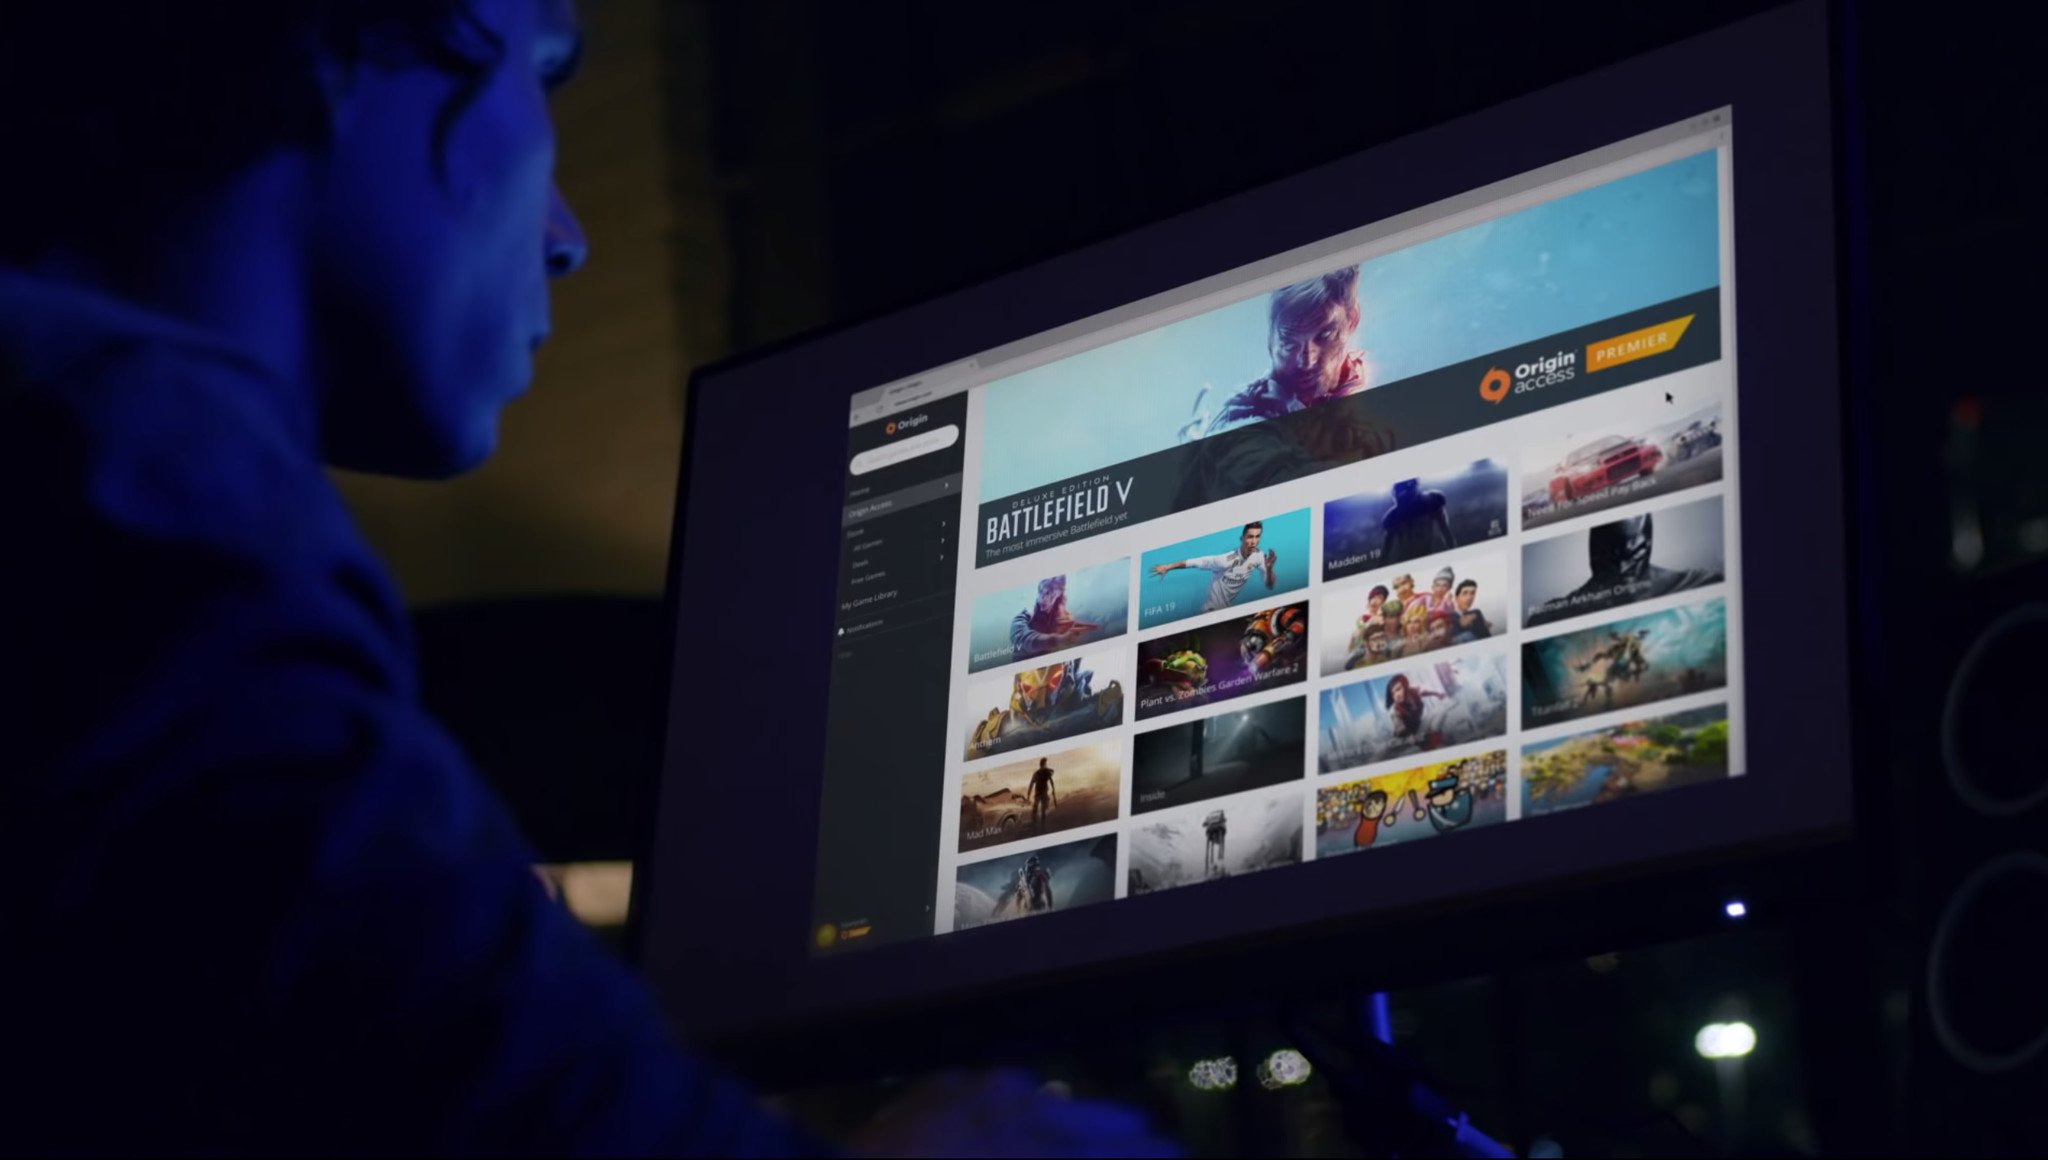 Electronic Arts cung cấp dịch vụ game streaming để giúp bạn truy cập và chơi game mọi lúc mọi nơi một cách dễ dàng. Nếu bạn muốn biết thêm về dịch vụ này và cách sử dụng, hãy xem ngay hình ảnh liên quan để có trải nghiệm game tuyệt vời nhất.